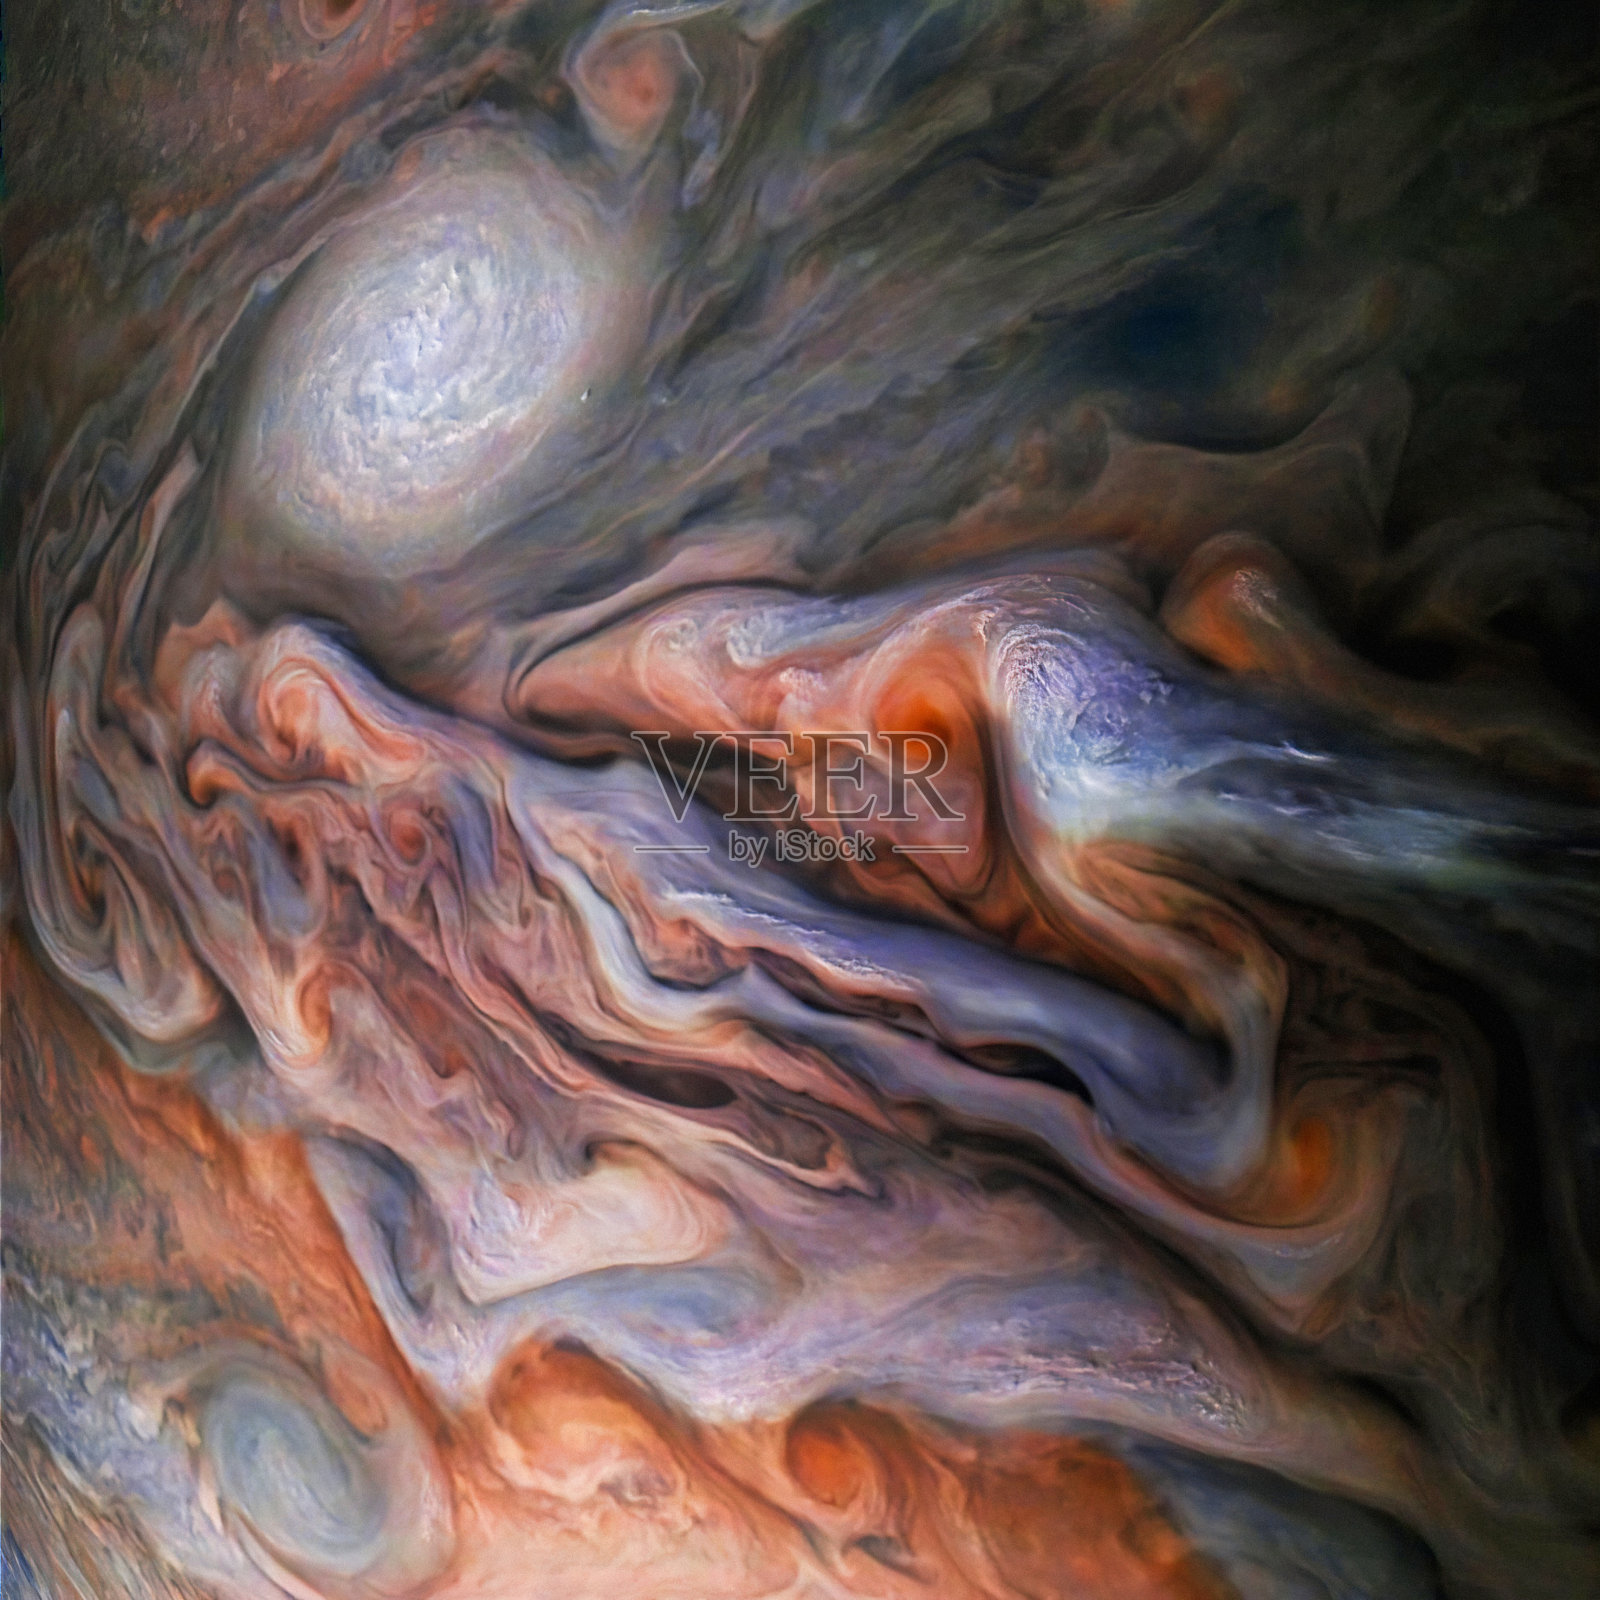 木星的大气层美得令人难以置信。威风凛凛的亲密接触。木星的表面。图片由美国宇航局提供照片摄影图片